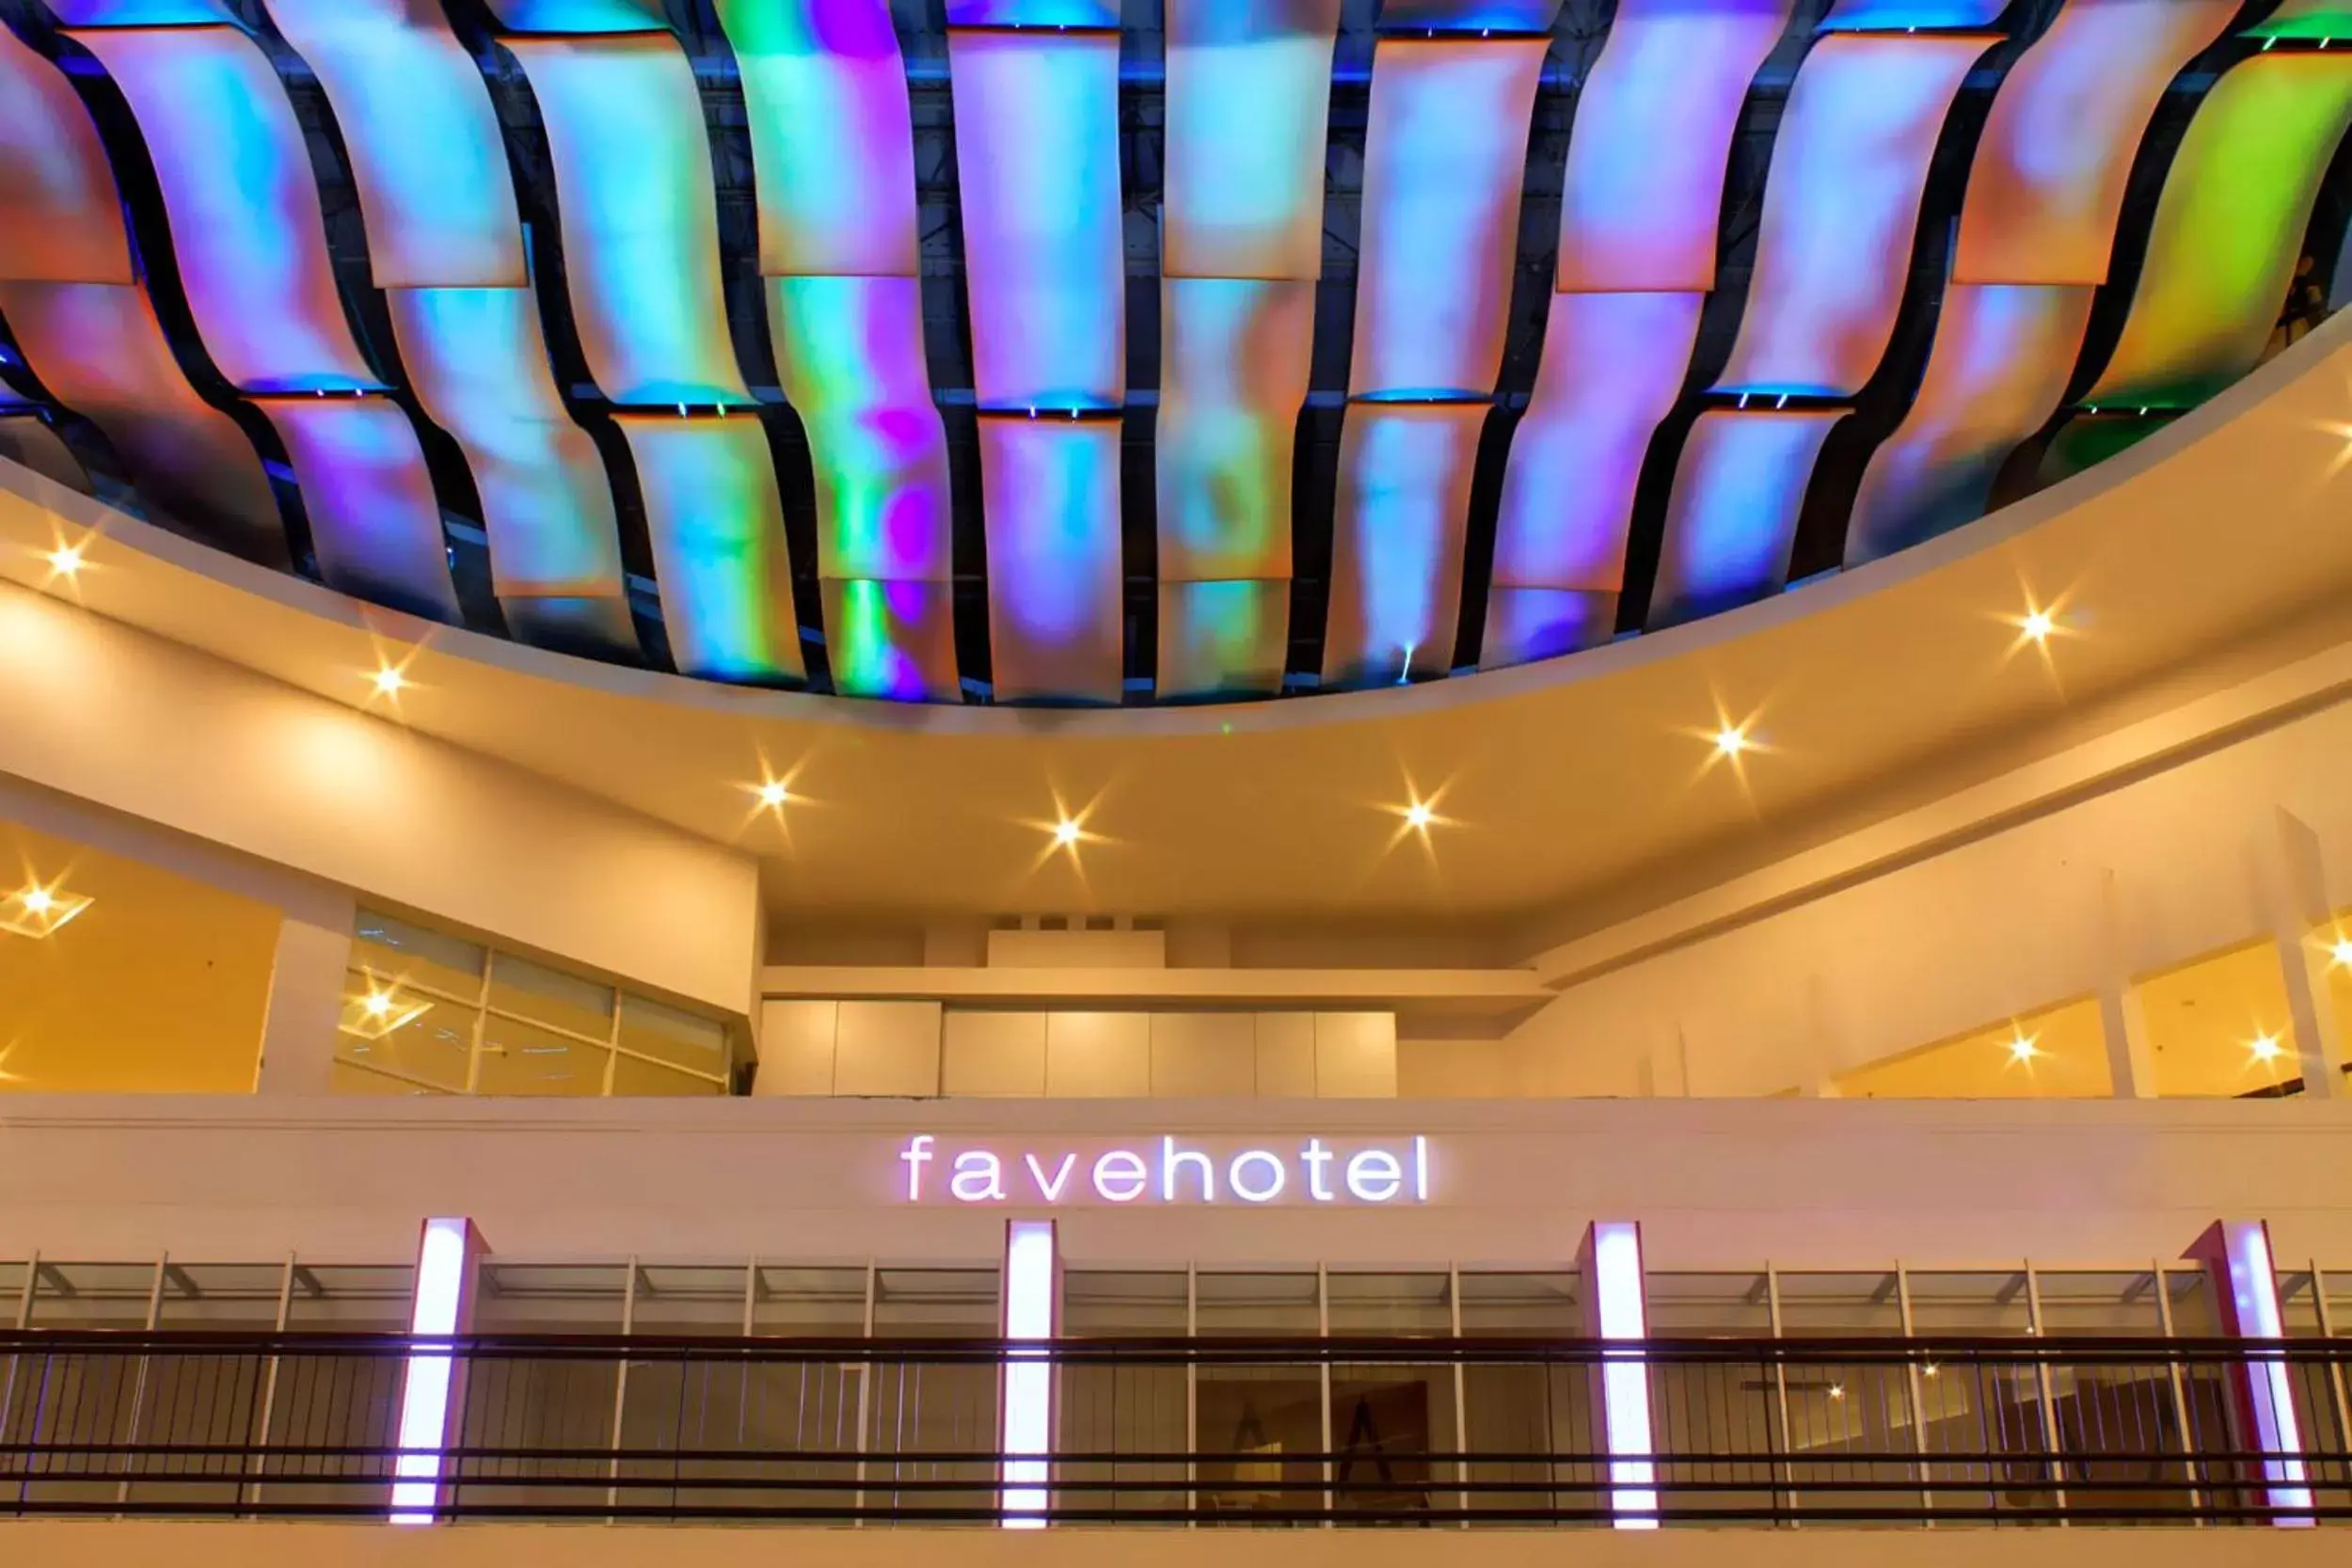 Facade/entrance in favehotel Braga